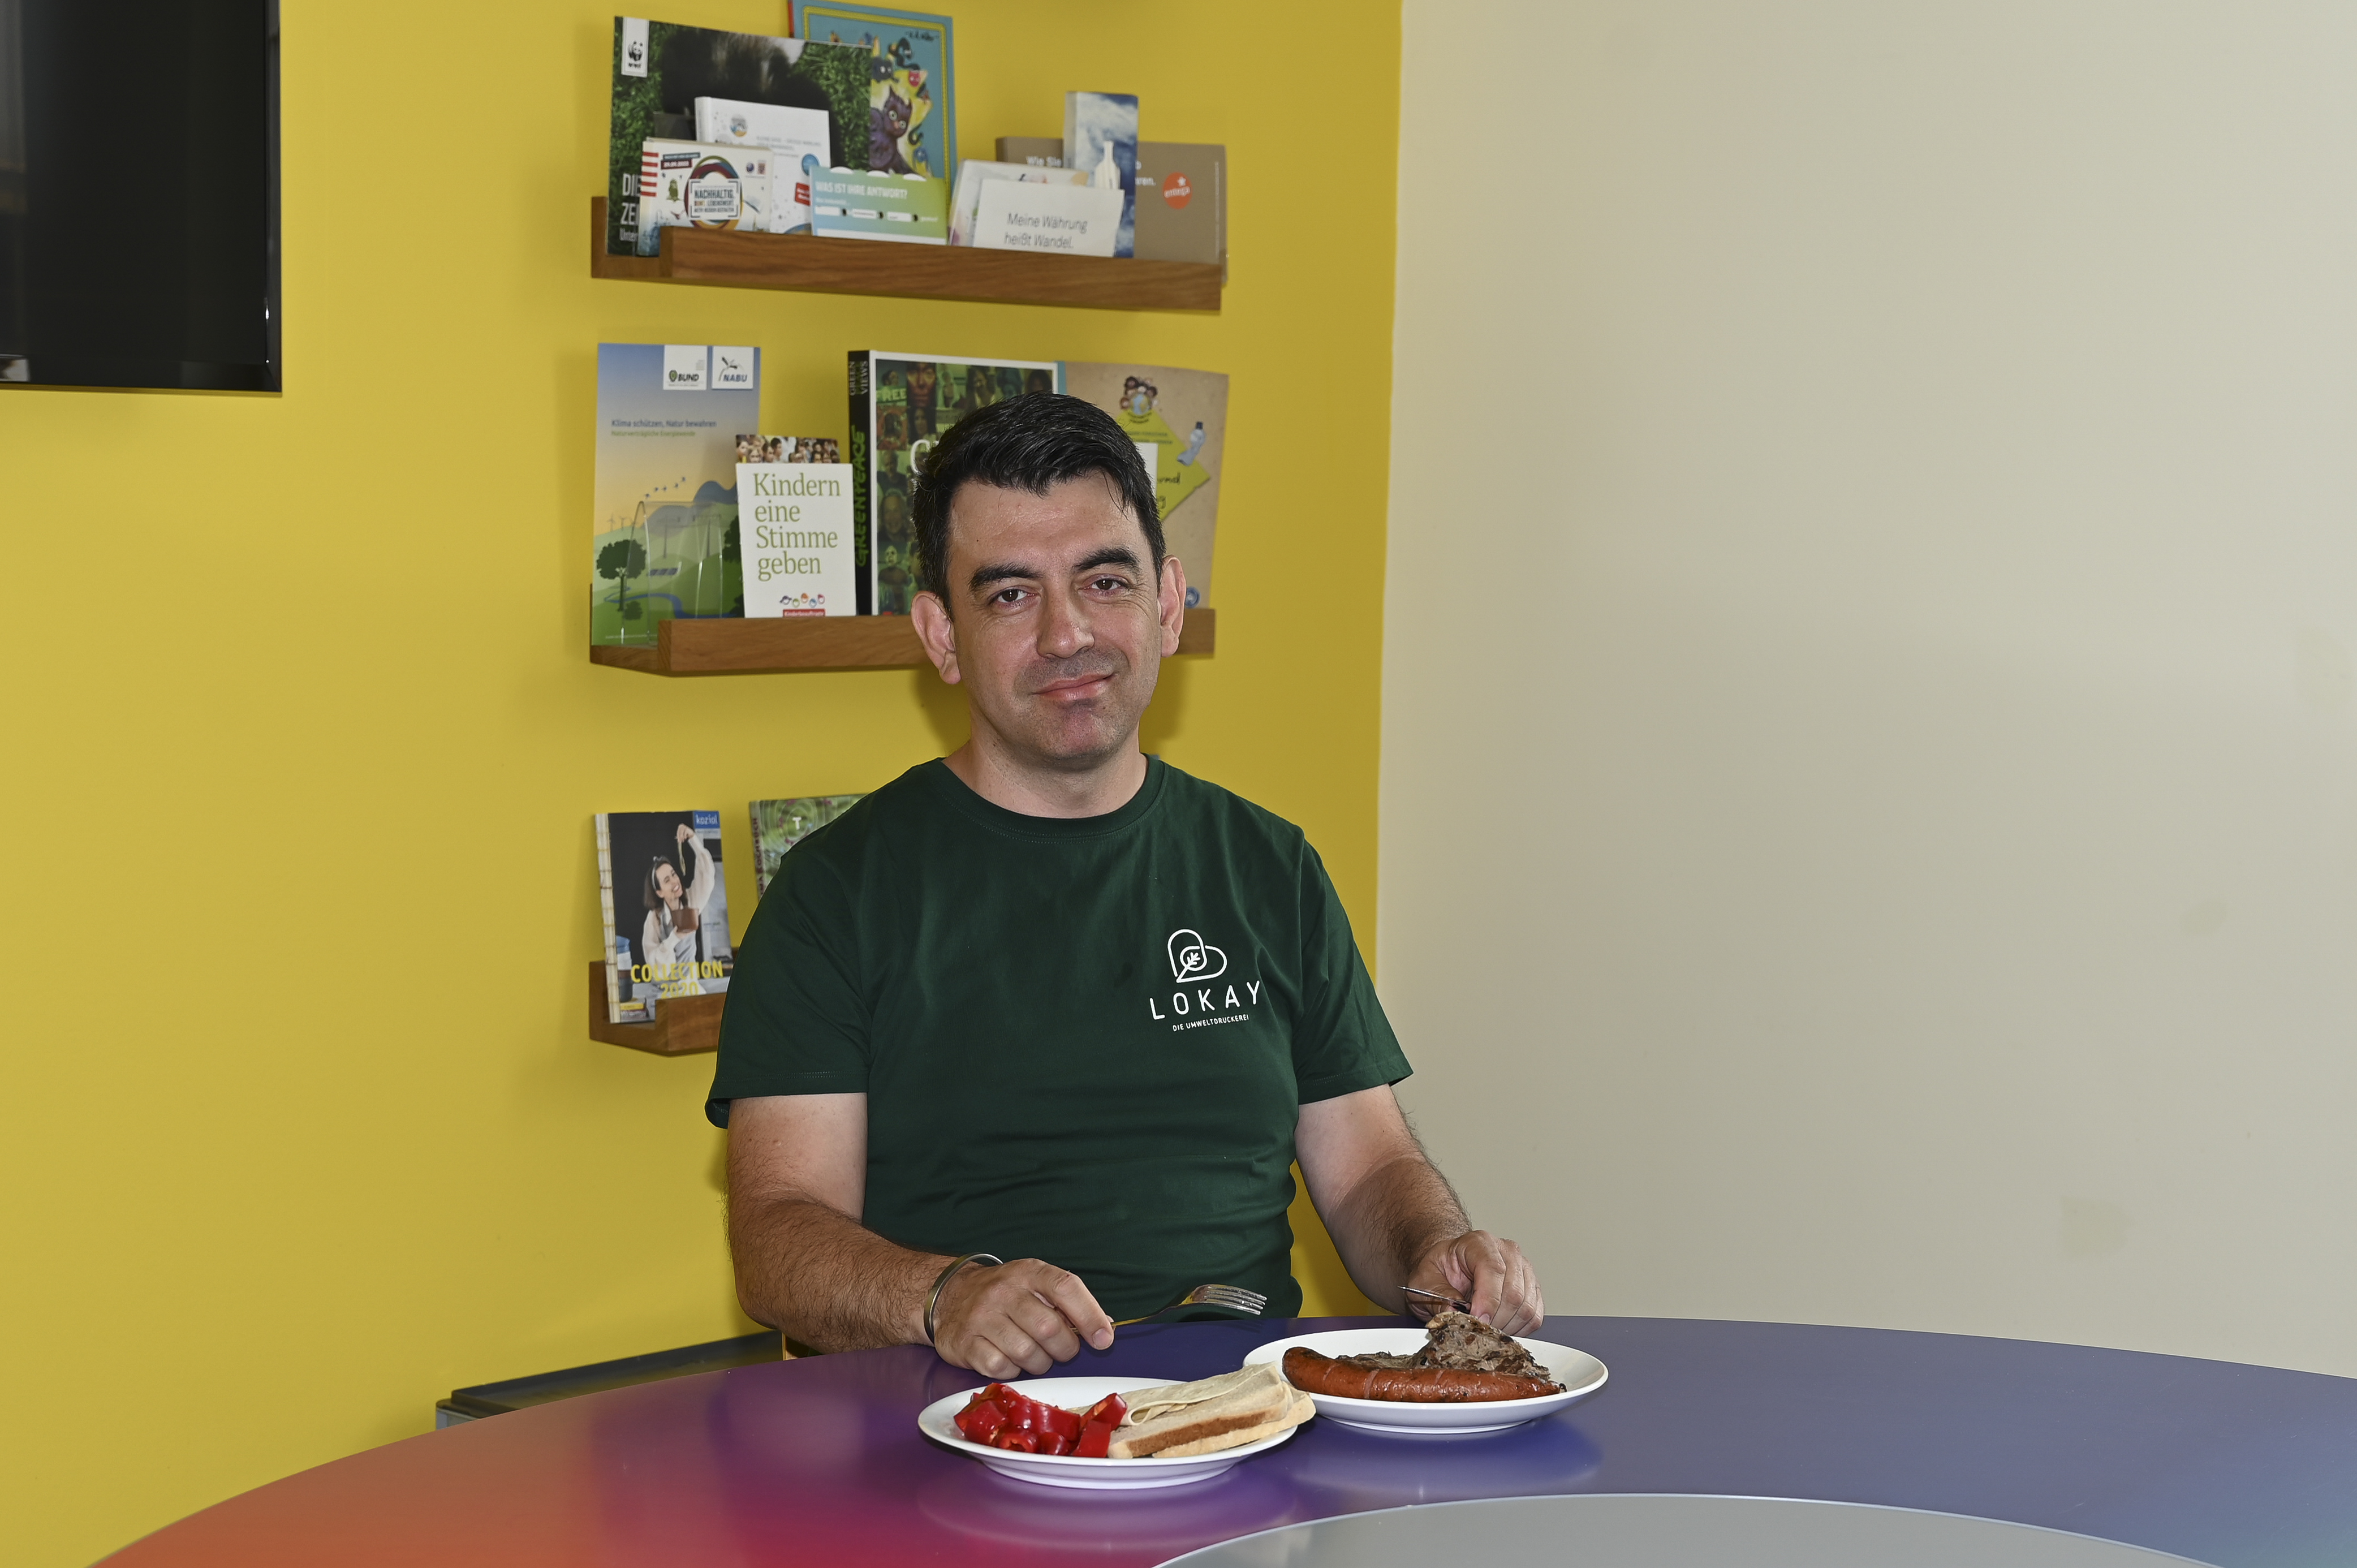 Ismail sitzt an einem Tisch und hat zwei Teller vor sich. Er trägt ein grünes T-Shirt mit Lokay-Logo. Hinter ihm ist ein Regal mit Druckmustern zu erkennen. 